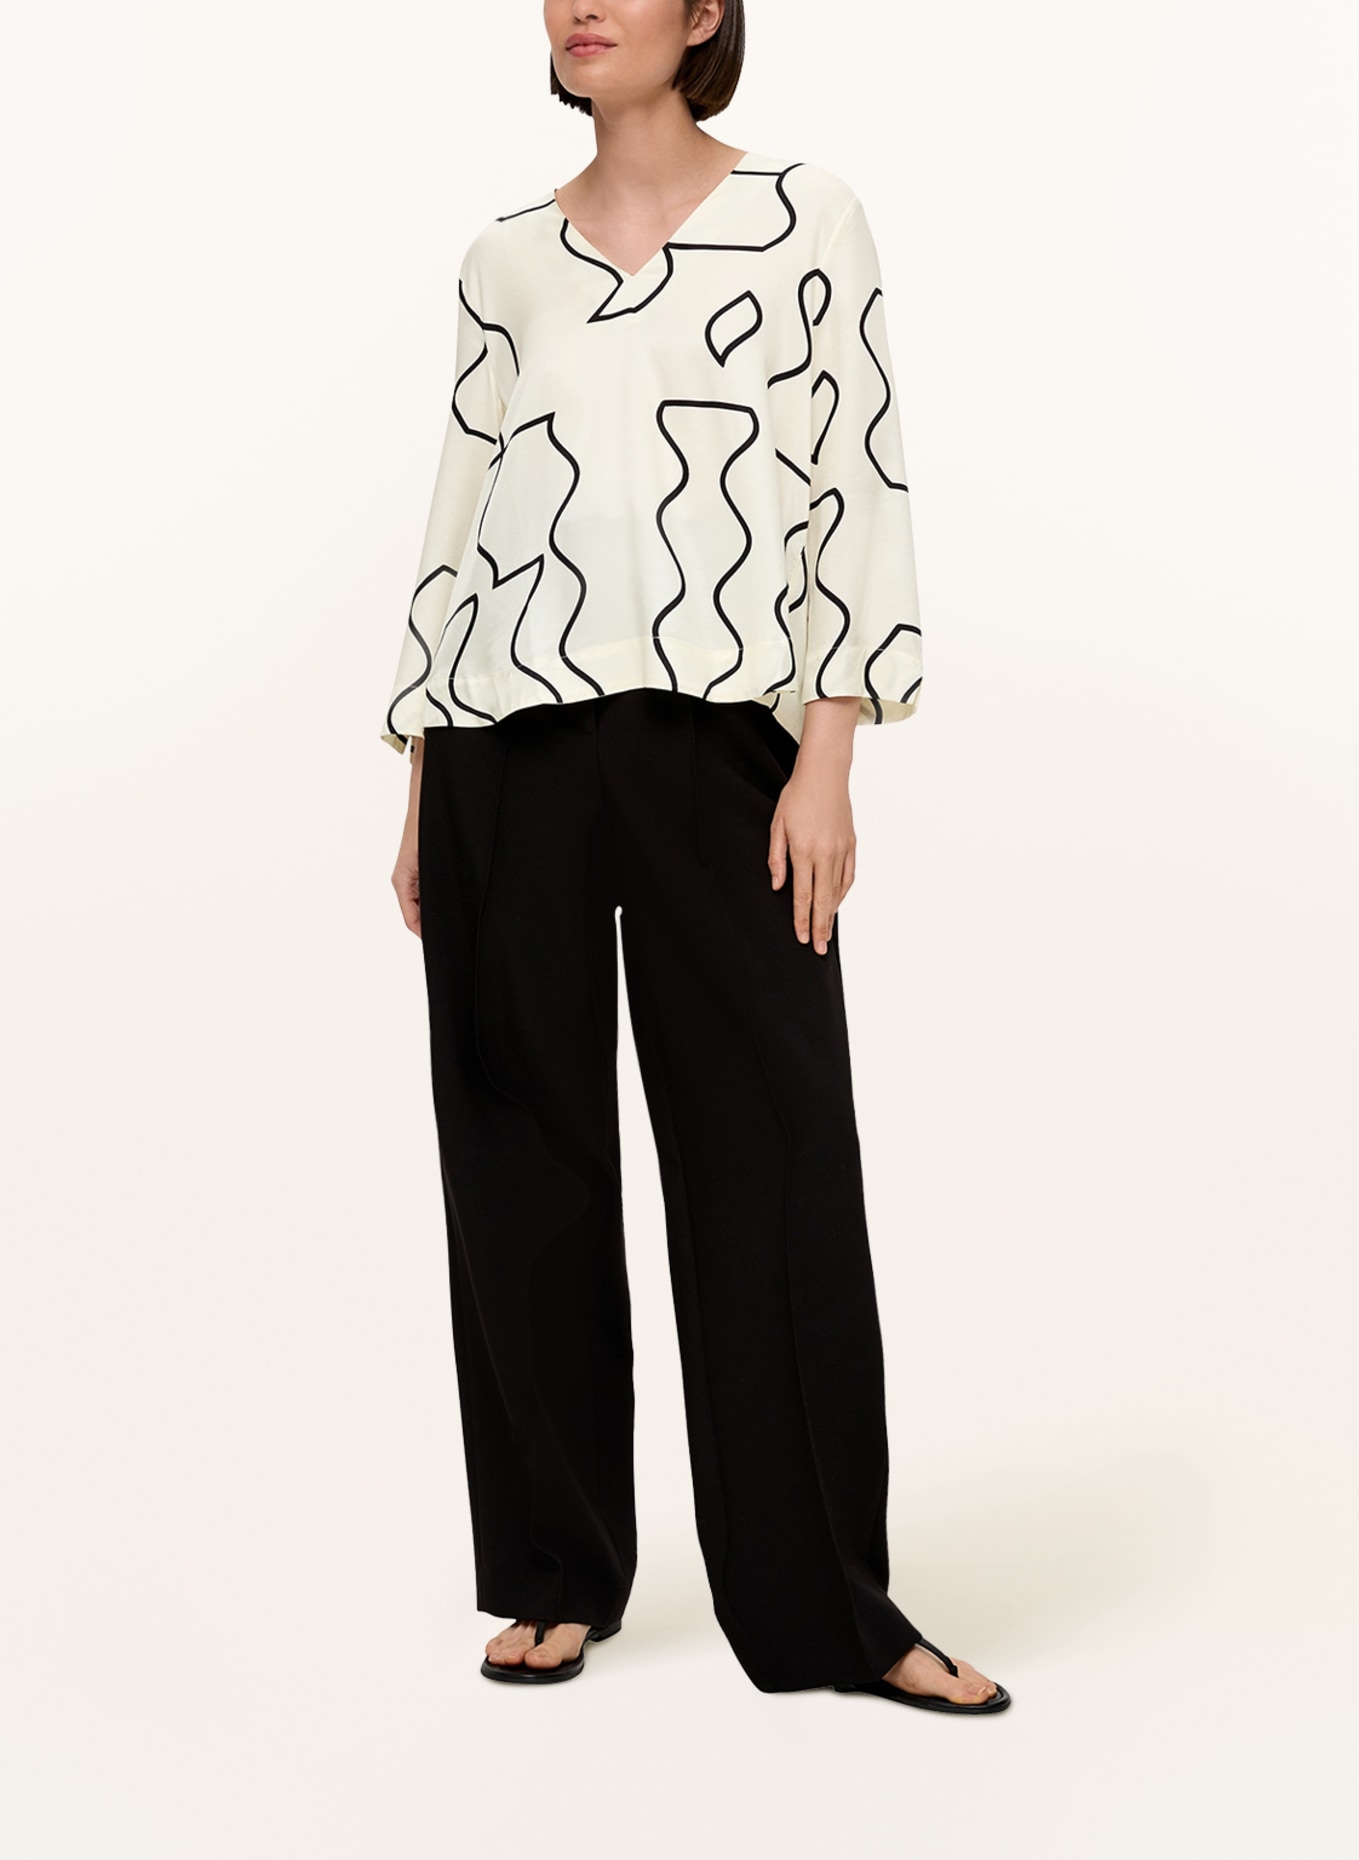 s.Oliver BLACK LABEL Shirt blouse with 3/4 sleeves, Color: ECRU/ BLACK (Image 2)